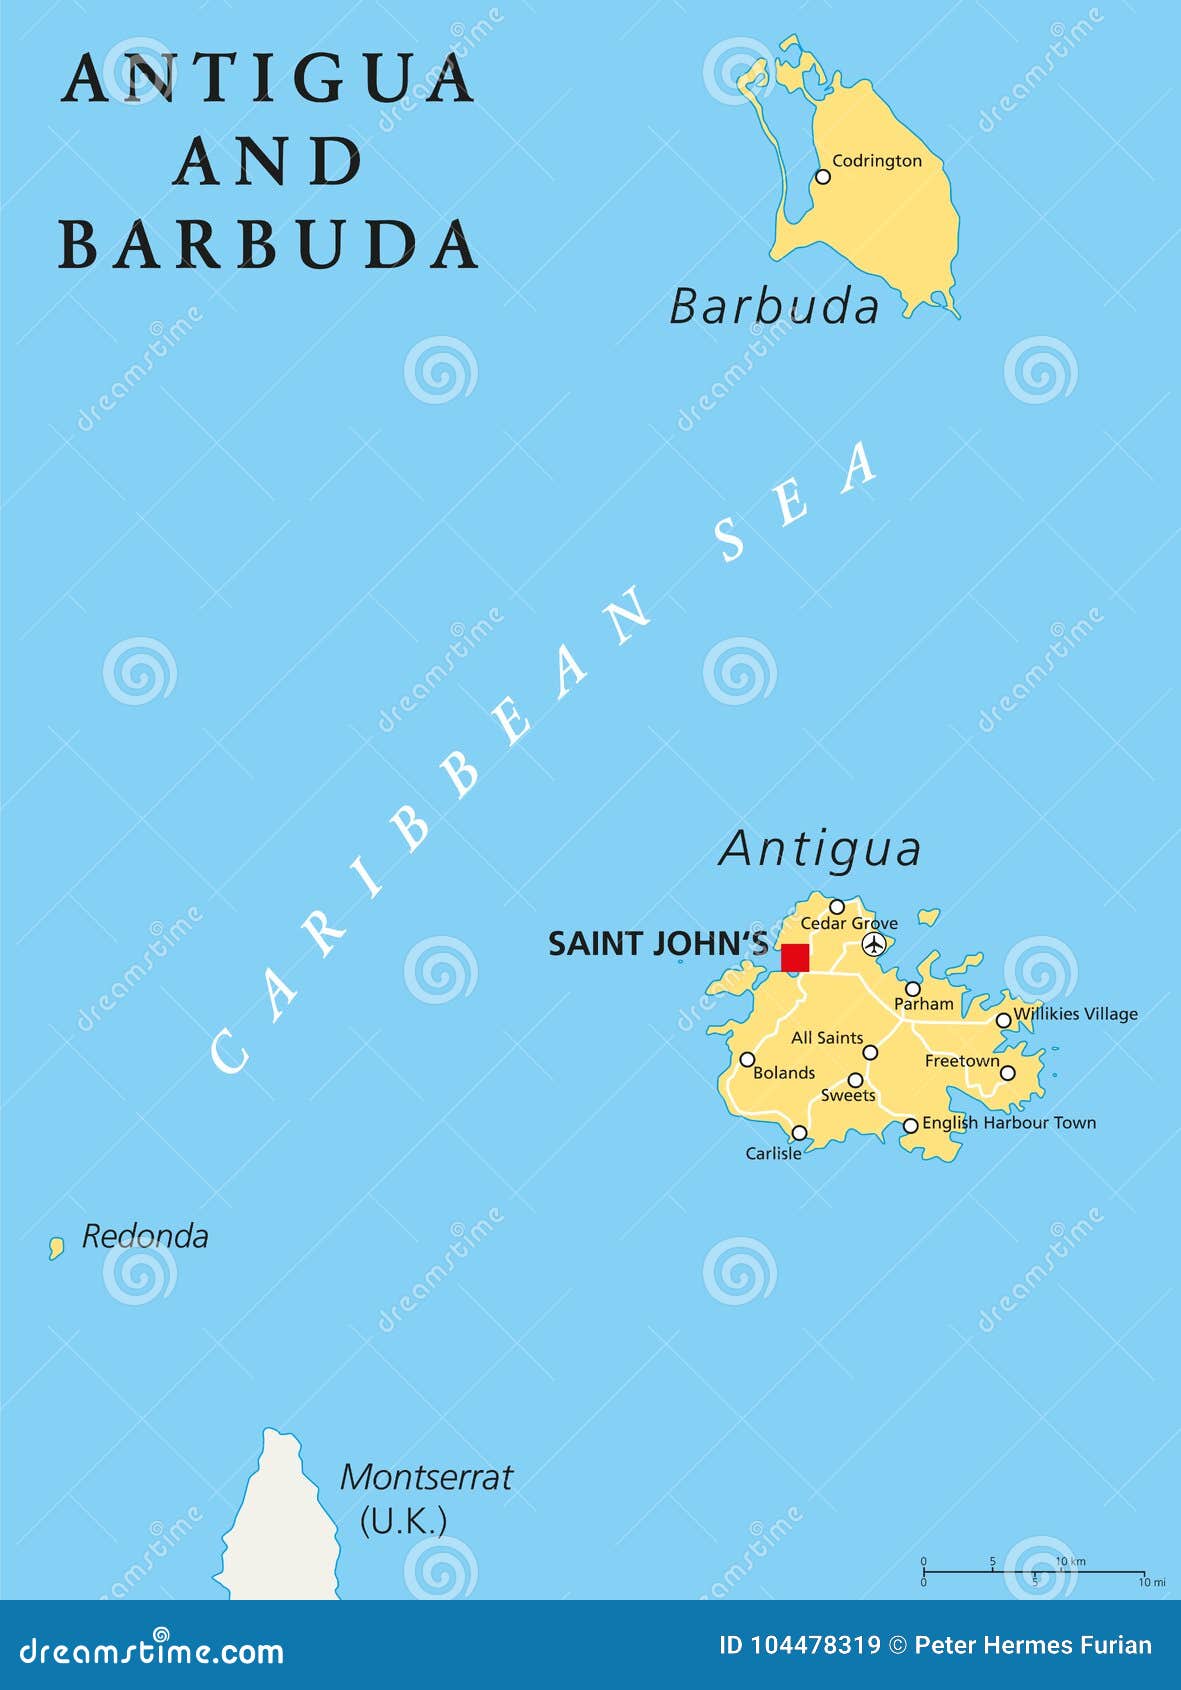 Descubrir Imagem Mapa De Antigua Y Barbuda Em Planisferio | The Best ...